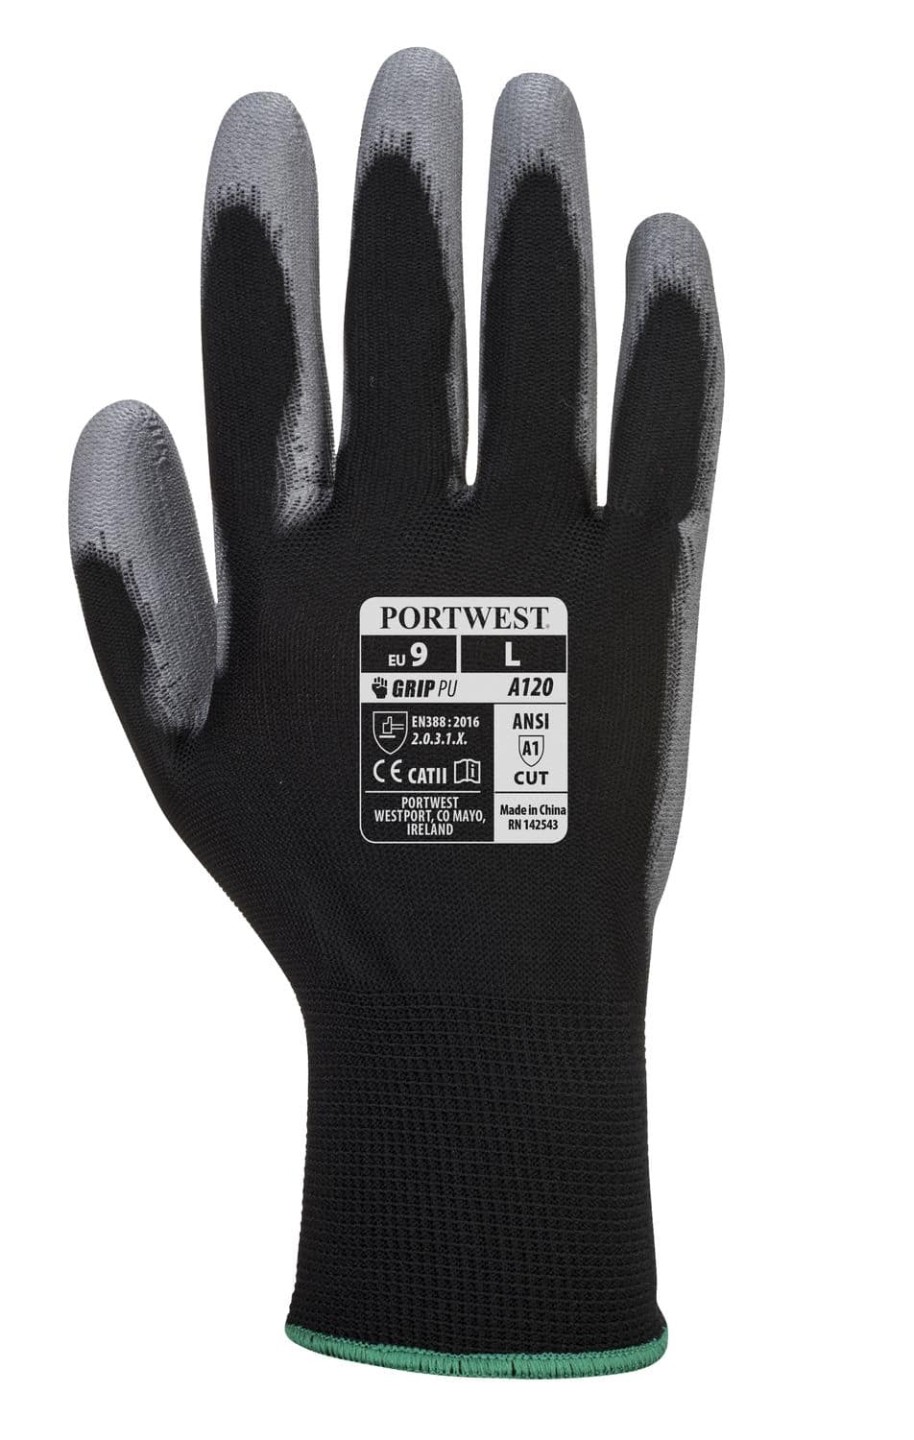 Portwest PU Palm Glove